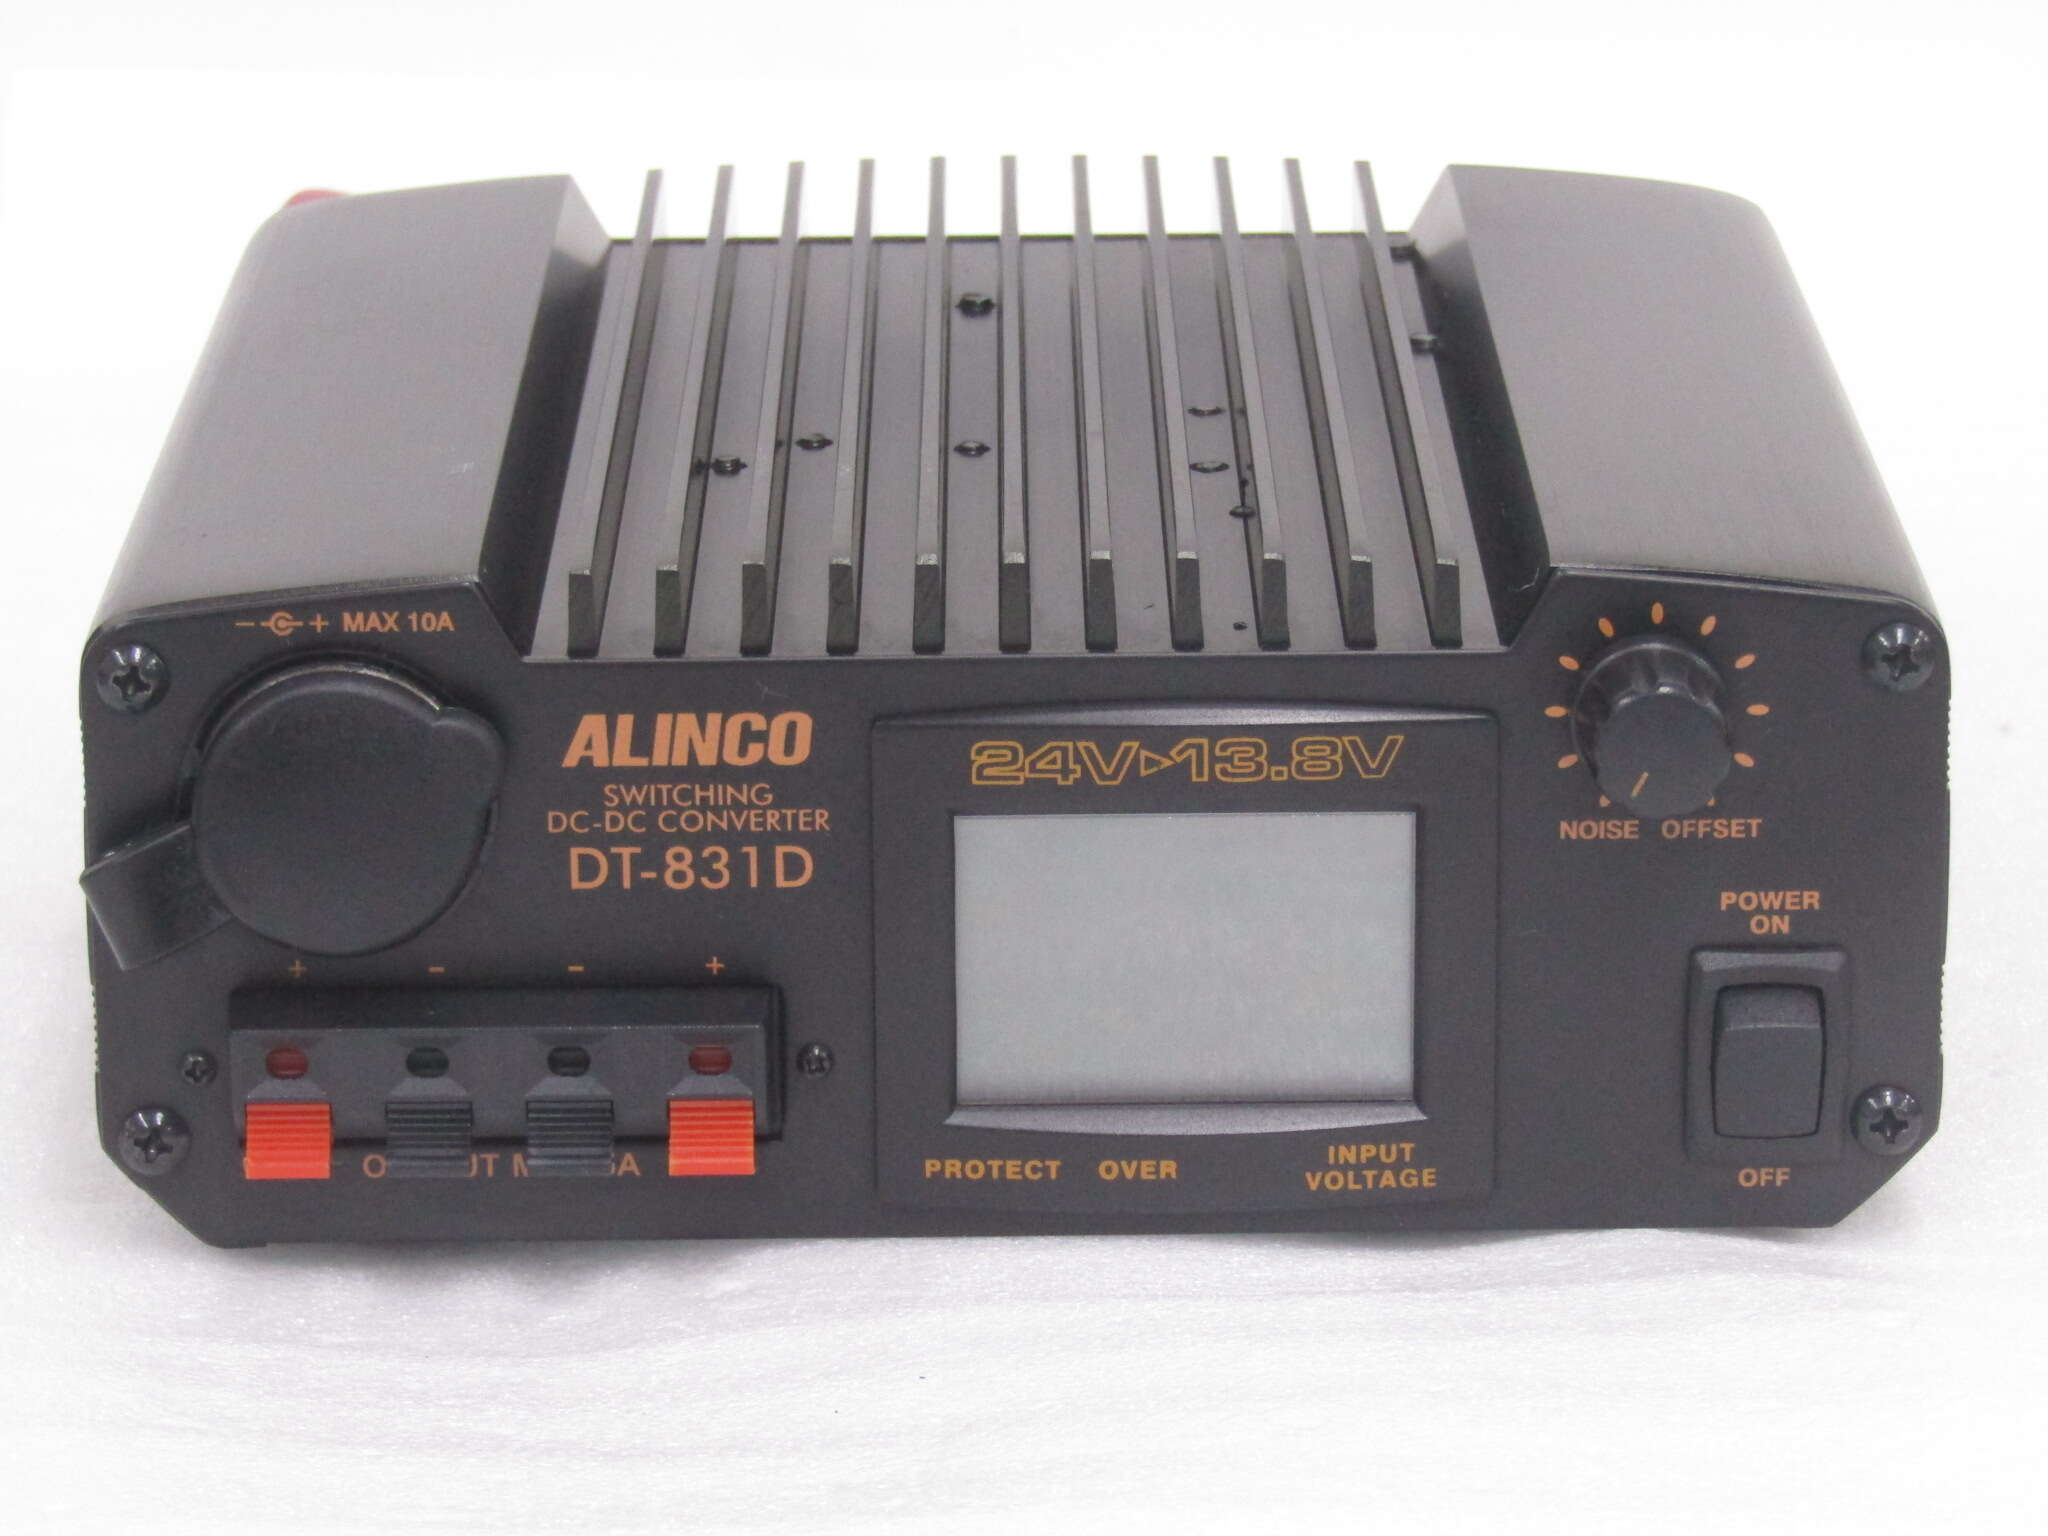 ALINCO アルインコ DT-930M 30A級スイッチング方式 DCDCコンバーター デコデコ (DC24V DC12V) 連続30A USB端子2A